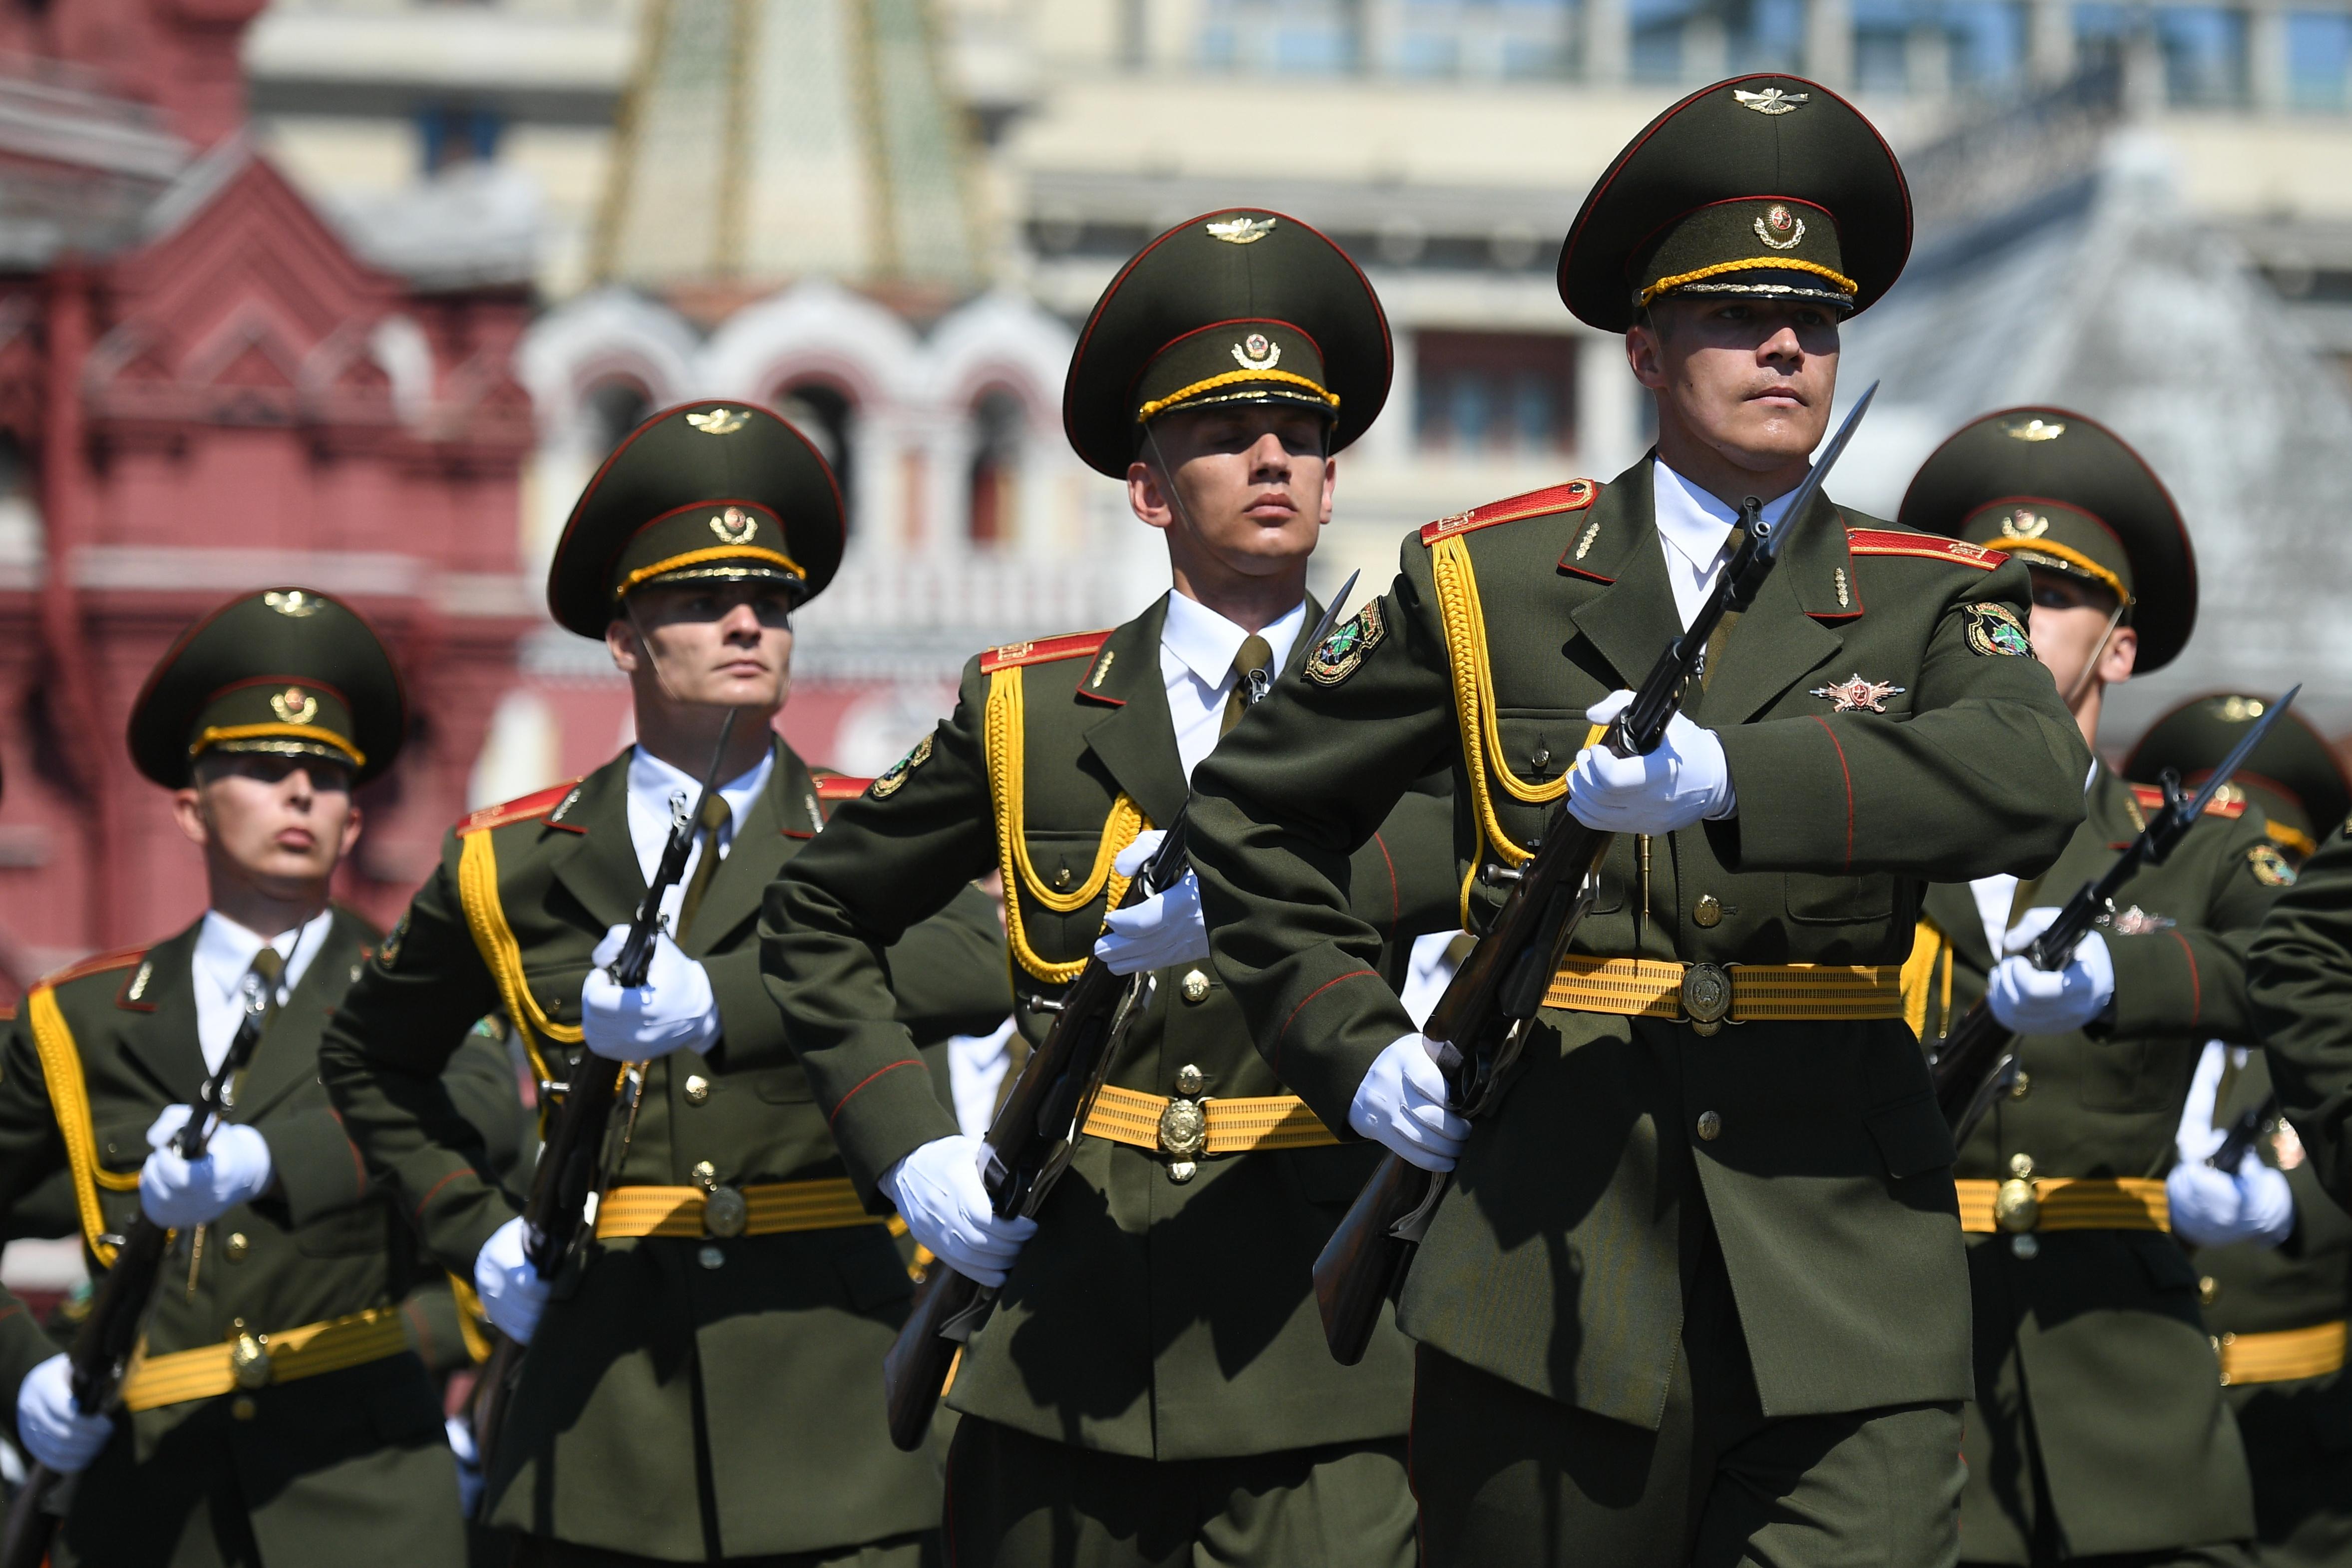 Случае параде. Военный парад. Солдаты на параде. Военнослужащие на параде. Армия России парад.